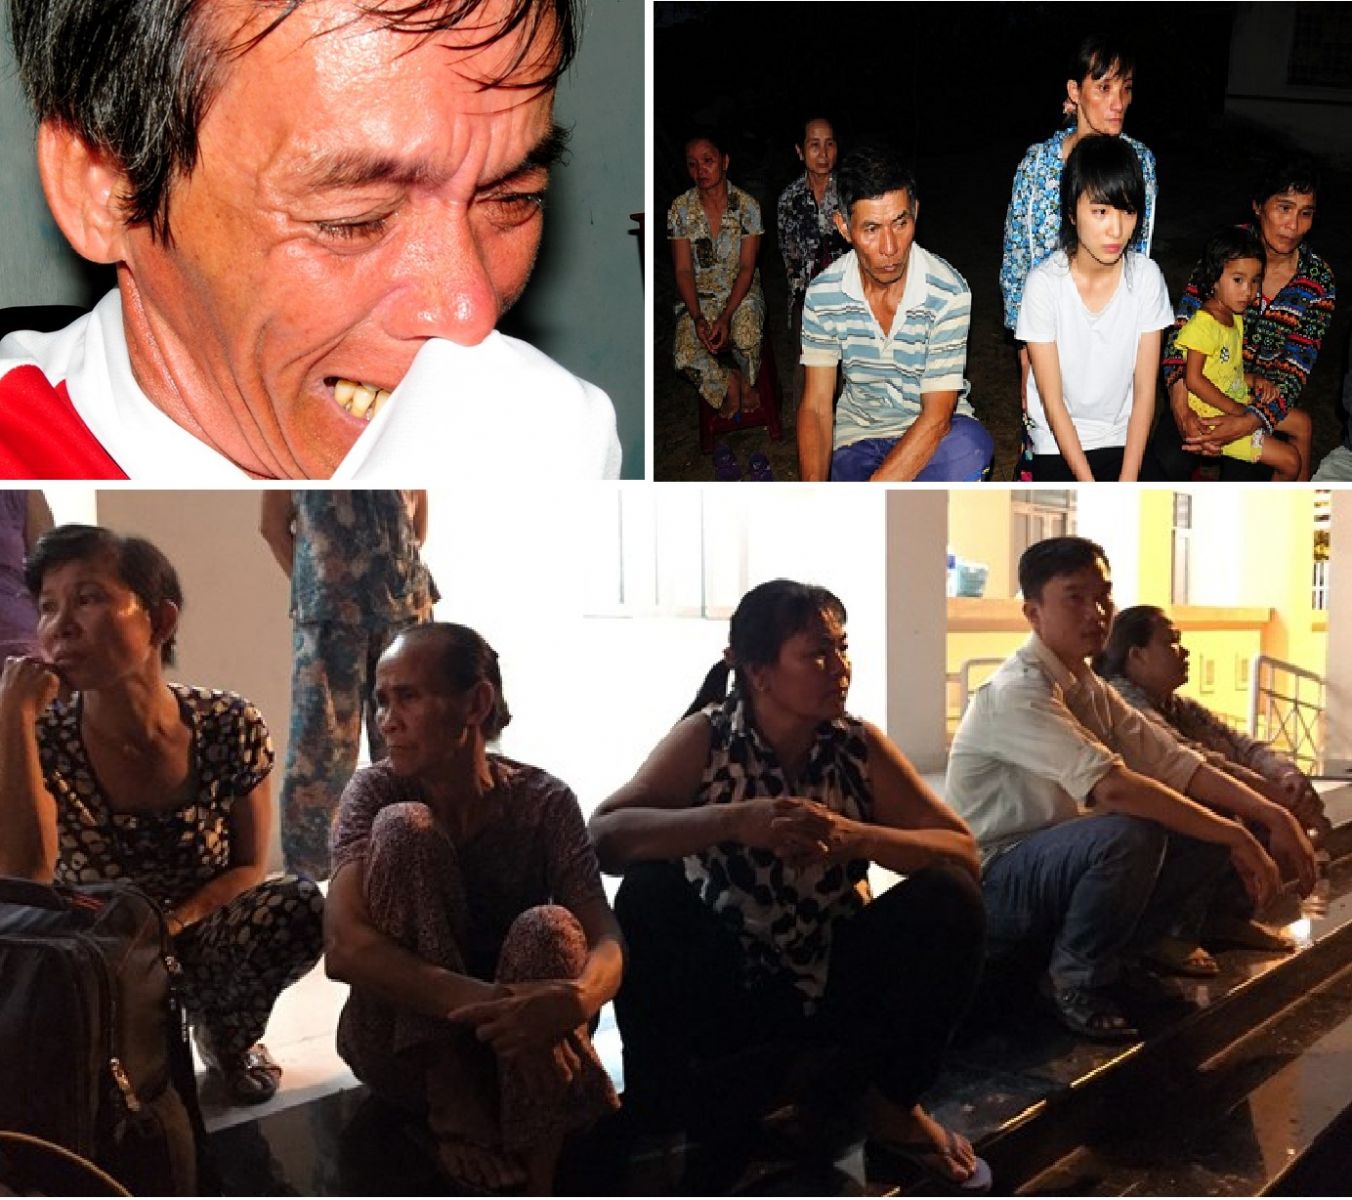 Tai nạn thảm khốc ở Bình Thuận: Nỗi đau của những người ở lại